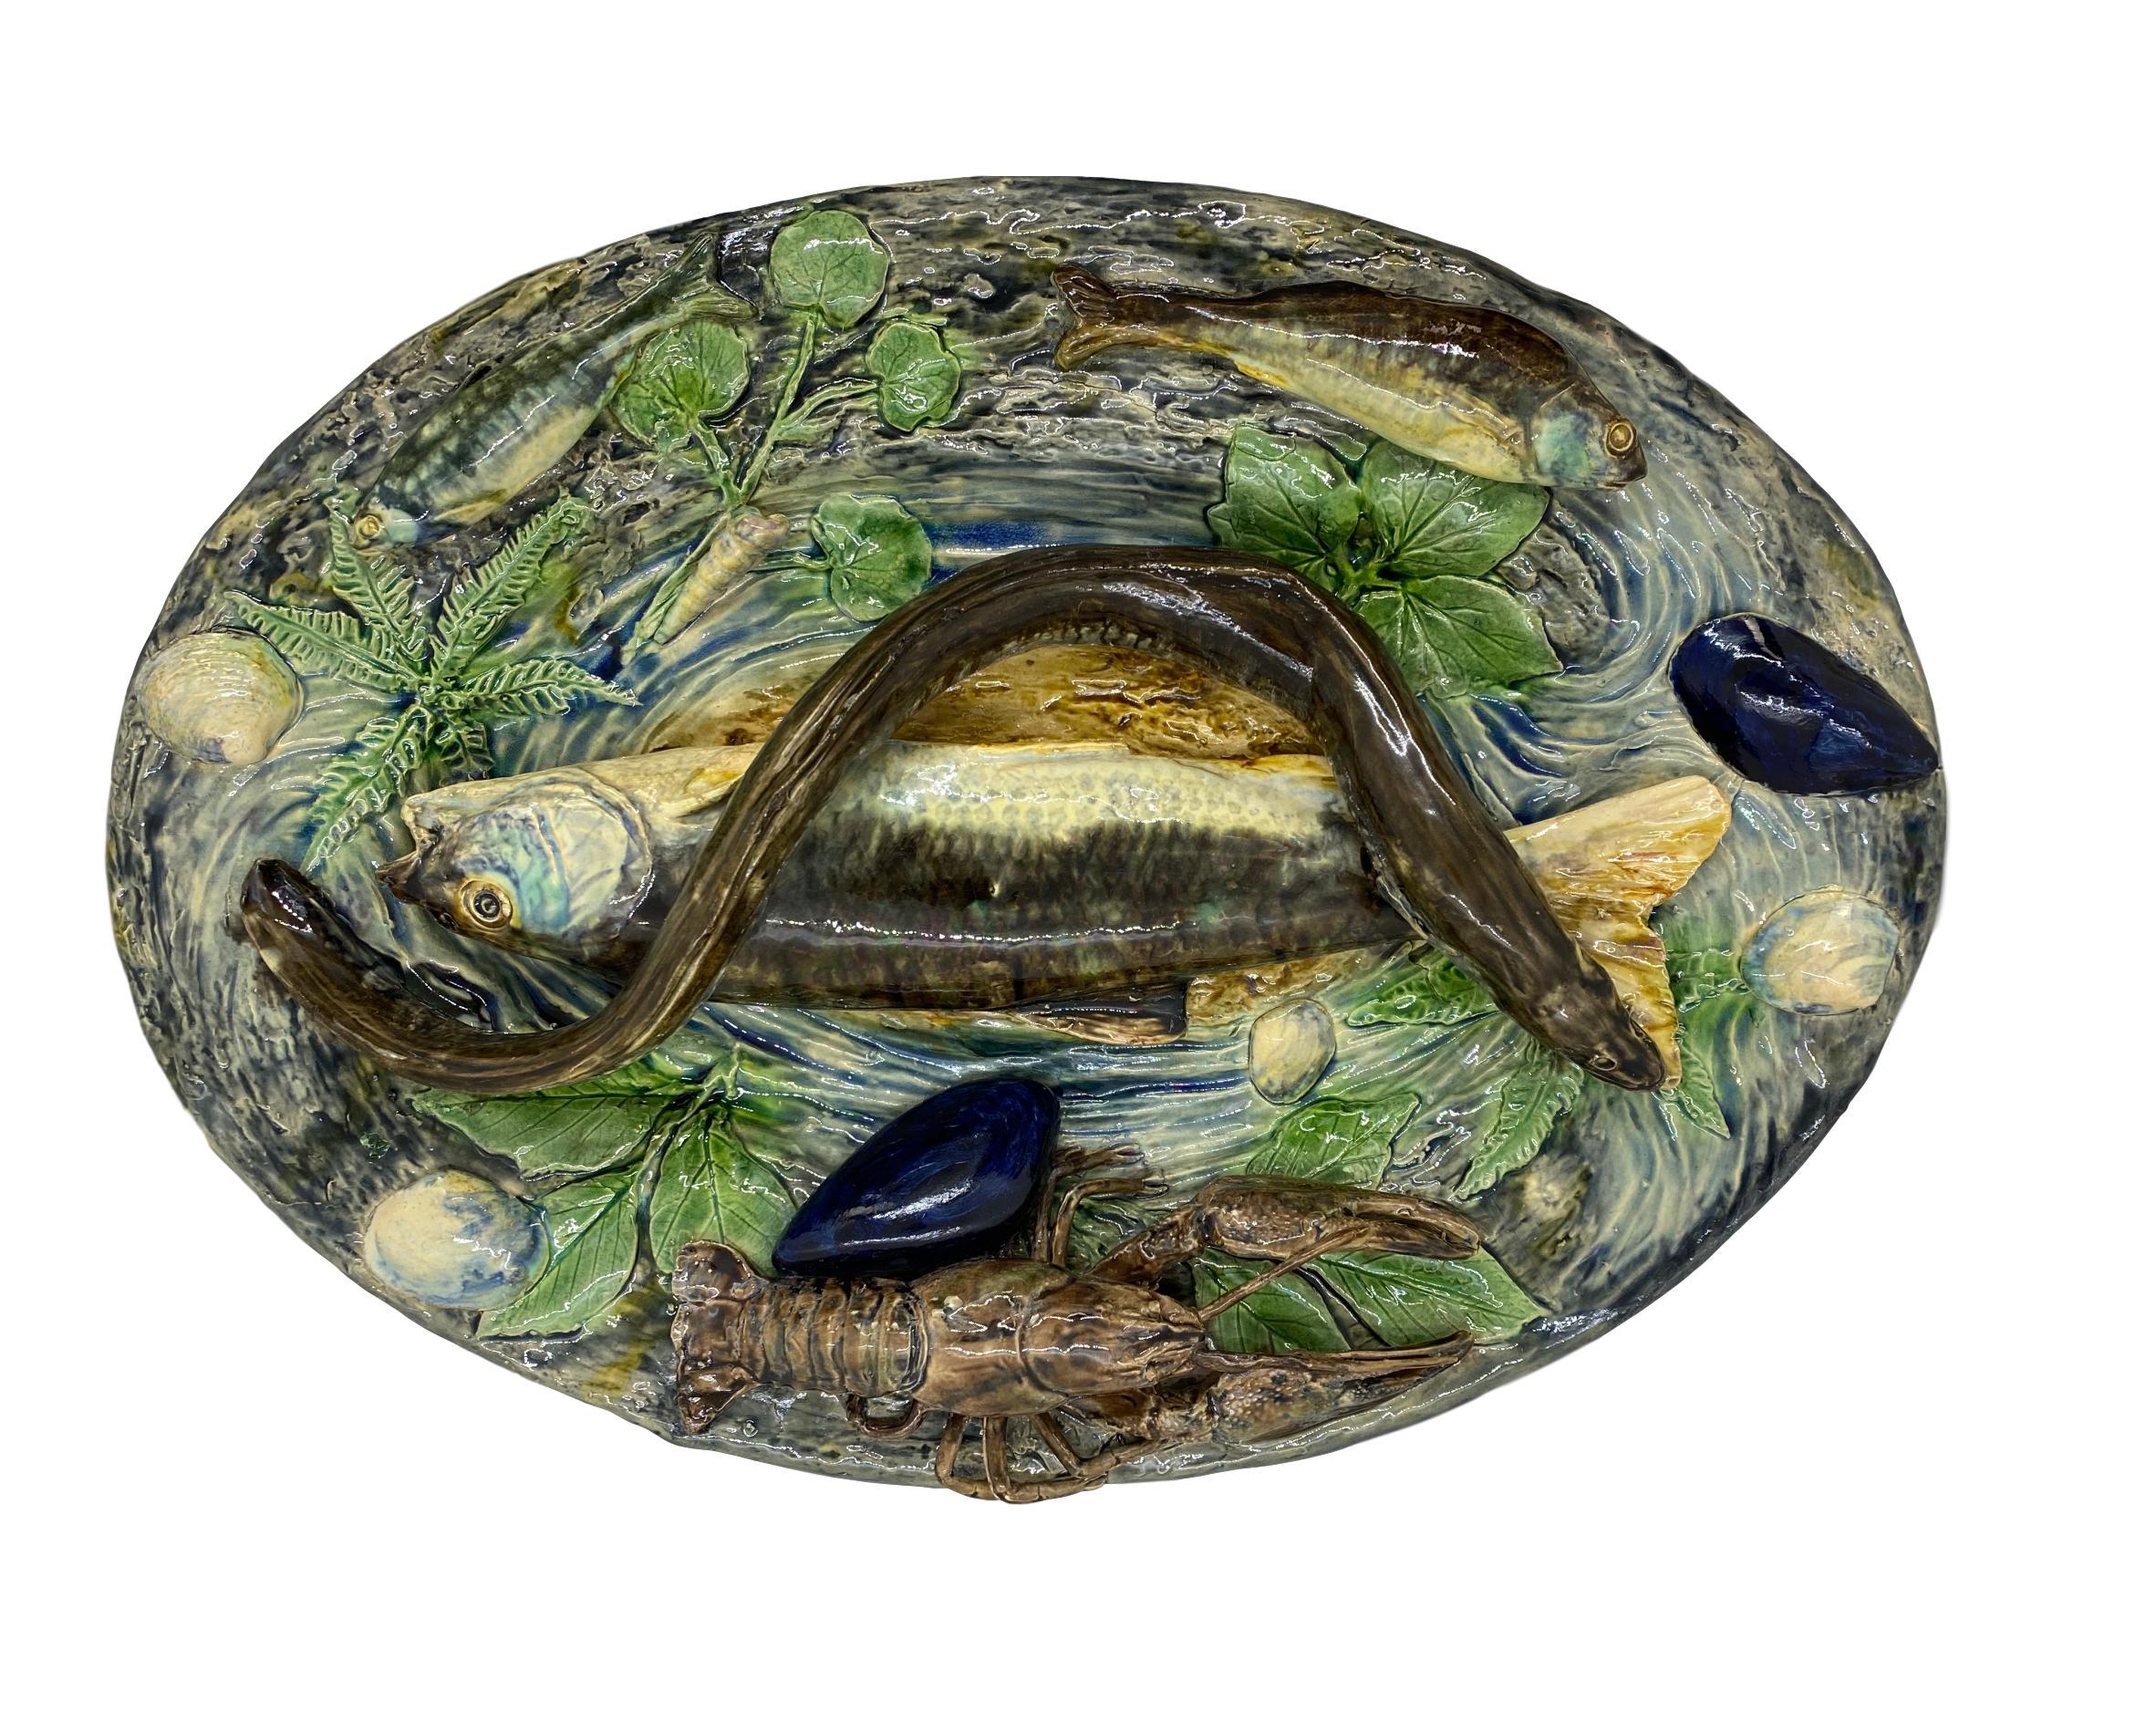 Grand plateau en trompe-l'œil en majolique de Plalissy par Alfred Renoleau (Français, 1854-1930), vers 1885.
Moulé de façon naturaliste d'un grand poisson et d'une anguille au centre, d'un homard et de divers petits poissons sur le bord, avec des